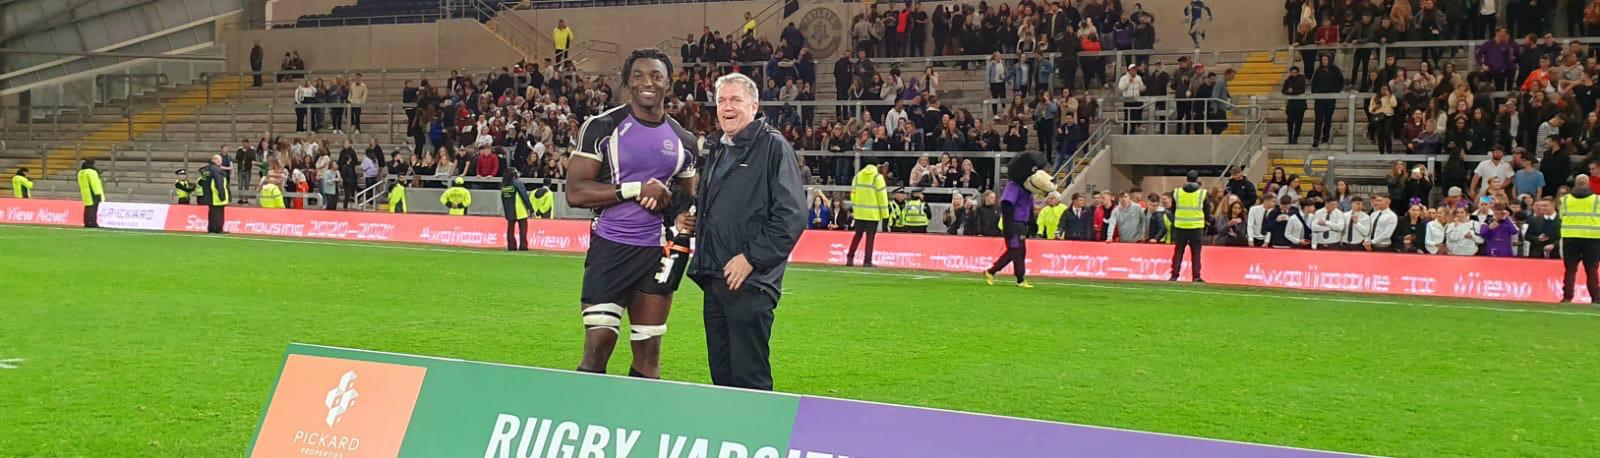 rugby leeds varsity 2019